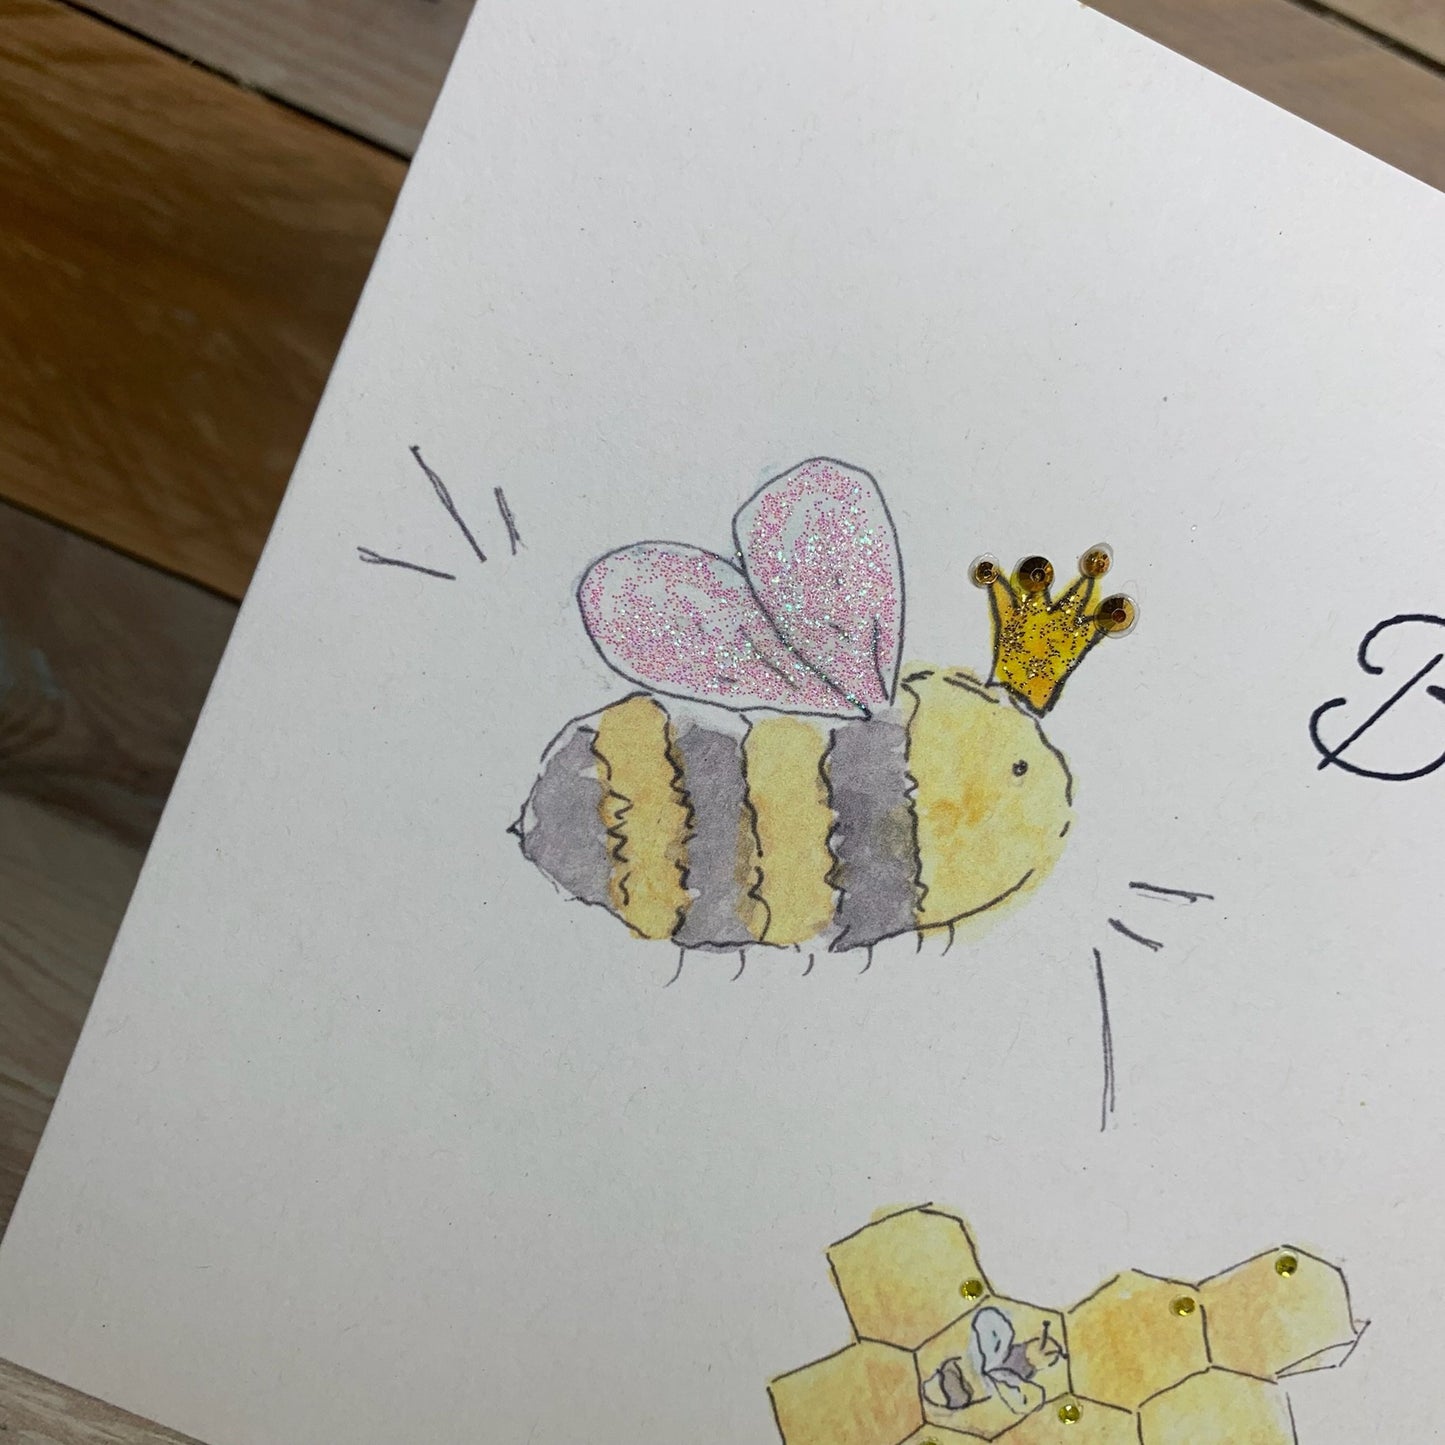 Queen Bee Birthday Card - Arty Bee Designs 